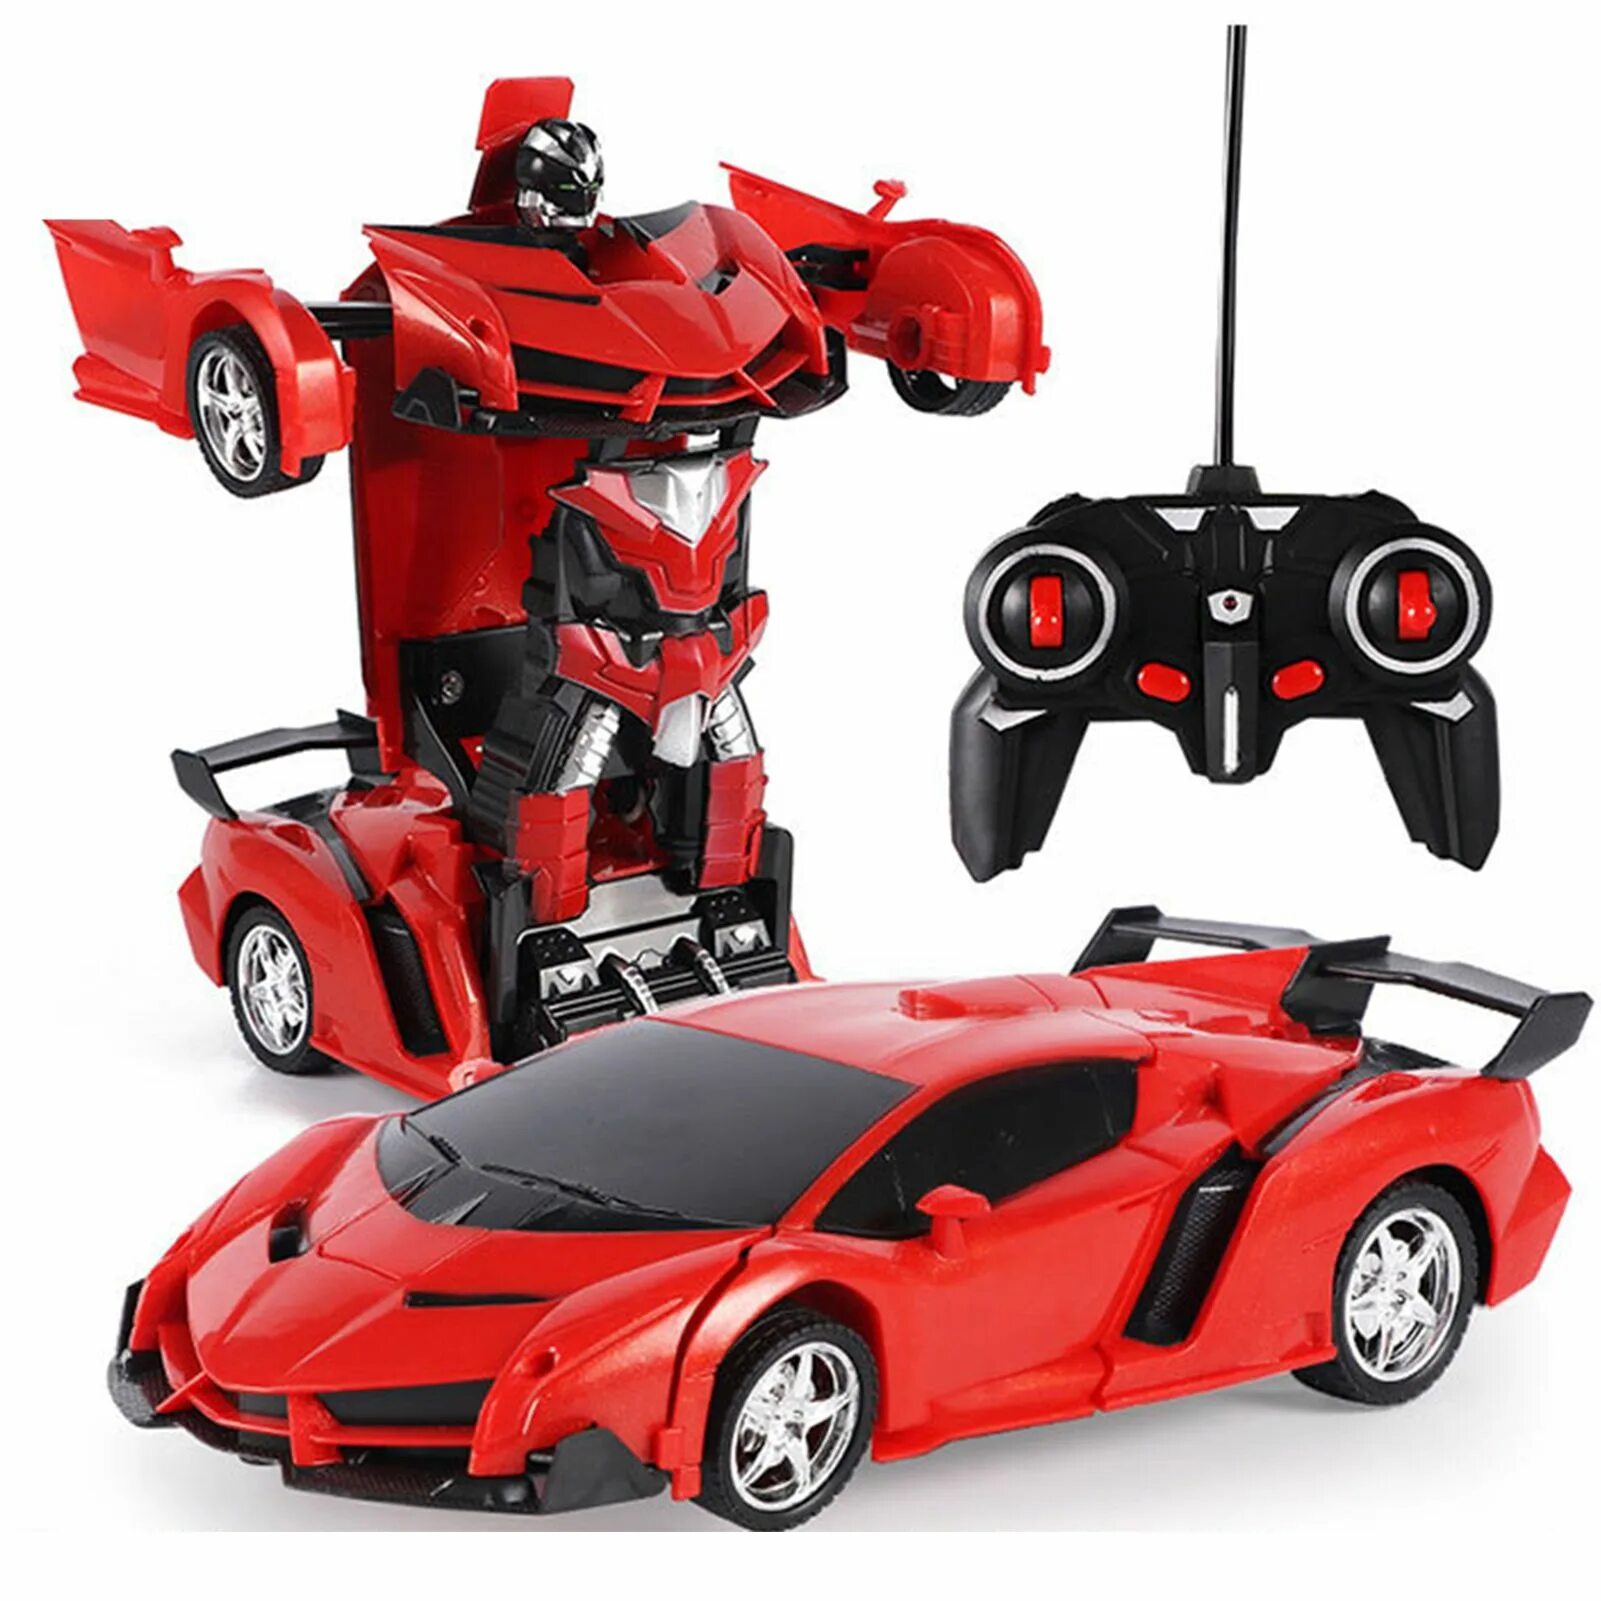 Робот-трансформер deformation car. Robot car deformation игрушки. Deformation Robot car Toy красный трансформер. Робот-трансформер deformation 5 в 1.